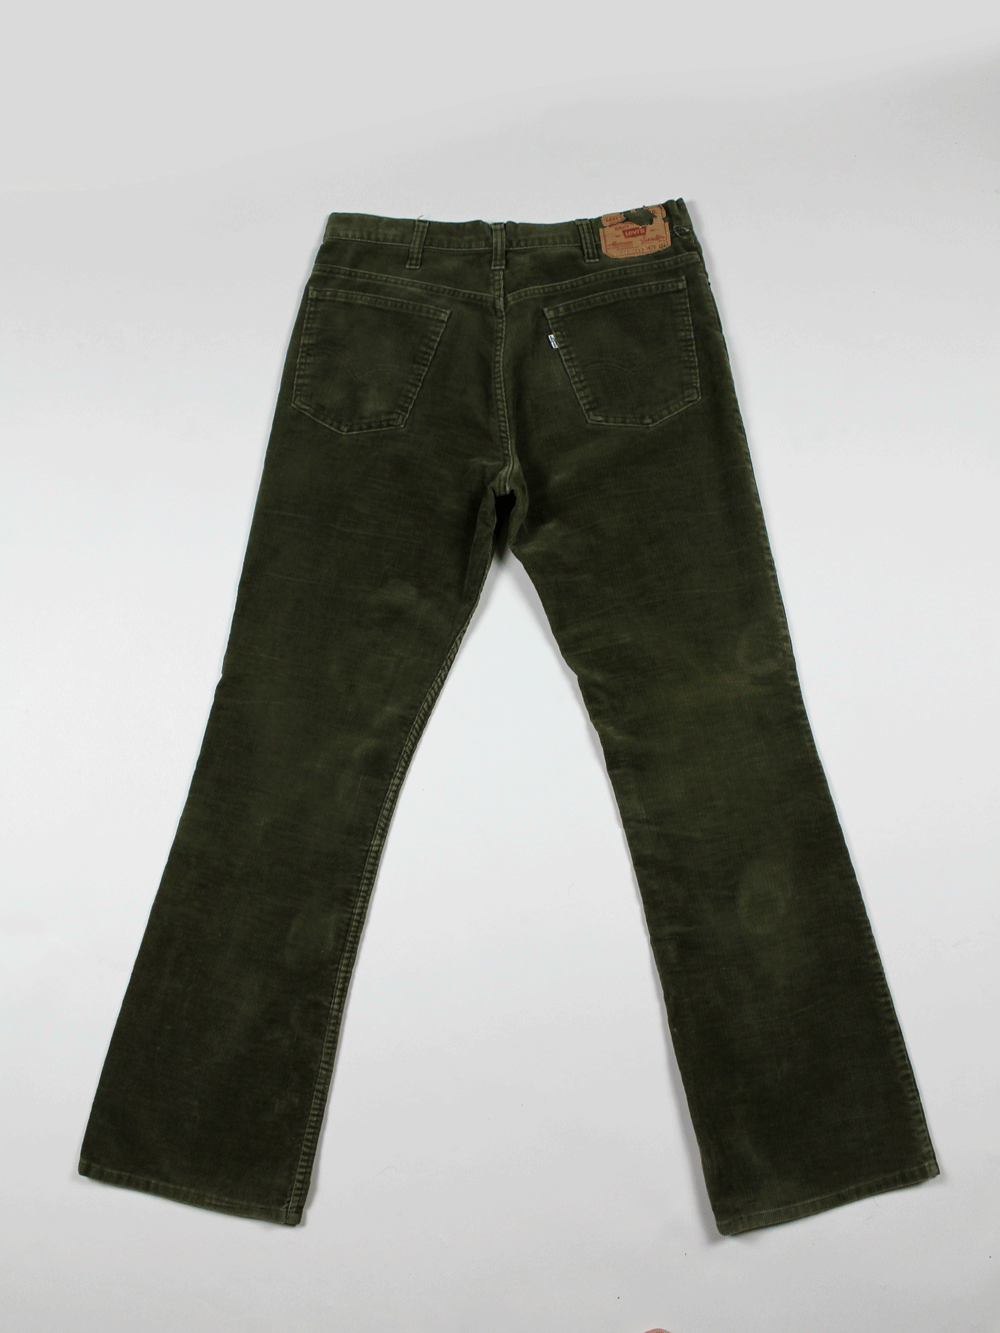 Levi's 517 Vintage Pant